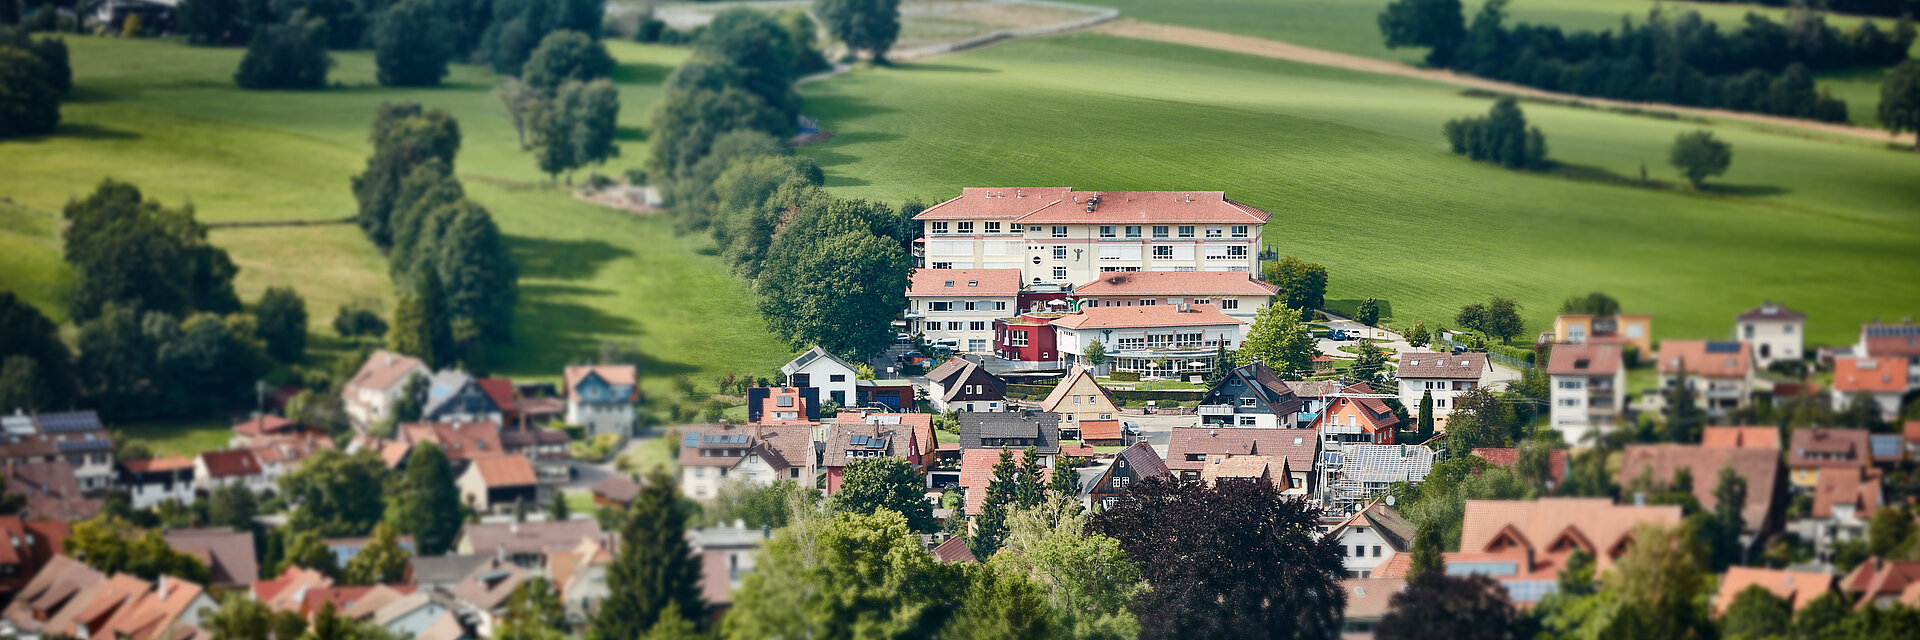 Bild: Das Gebäude der Kinderklinik Schömberg, eingebettet in die Natur und den Ort Schömberg